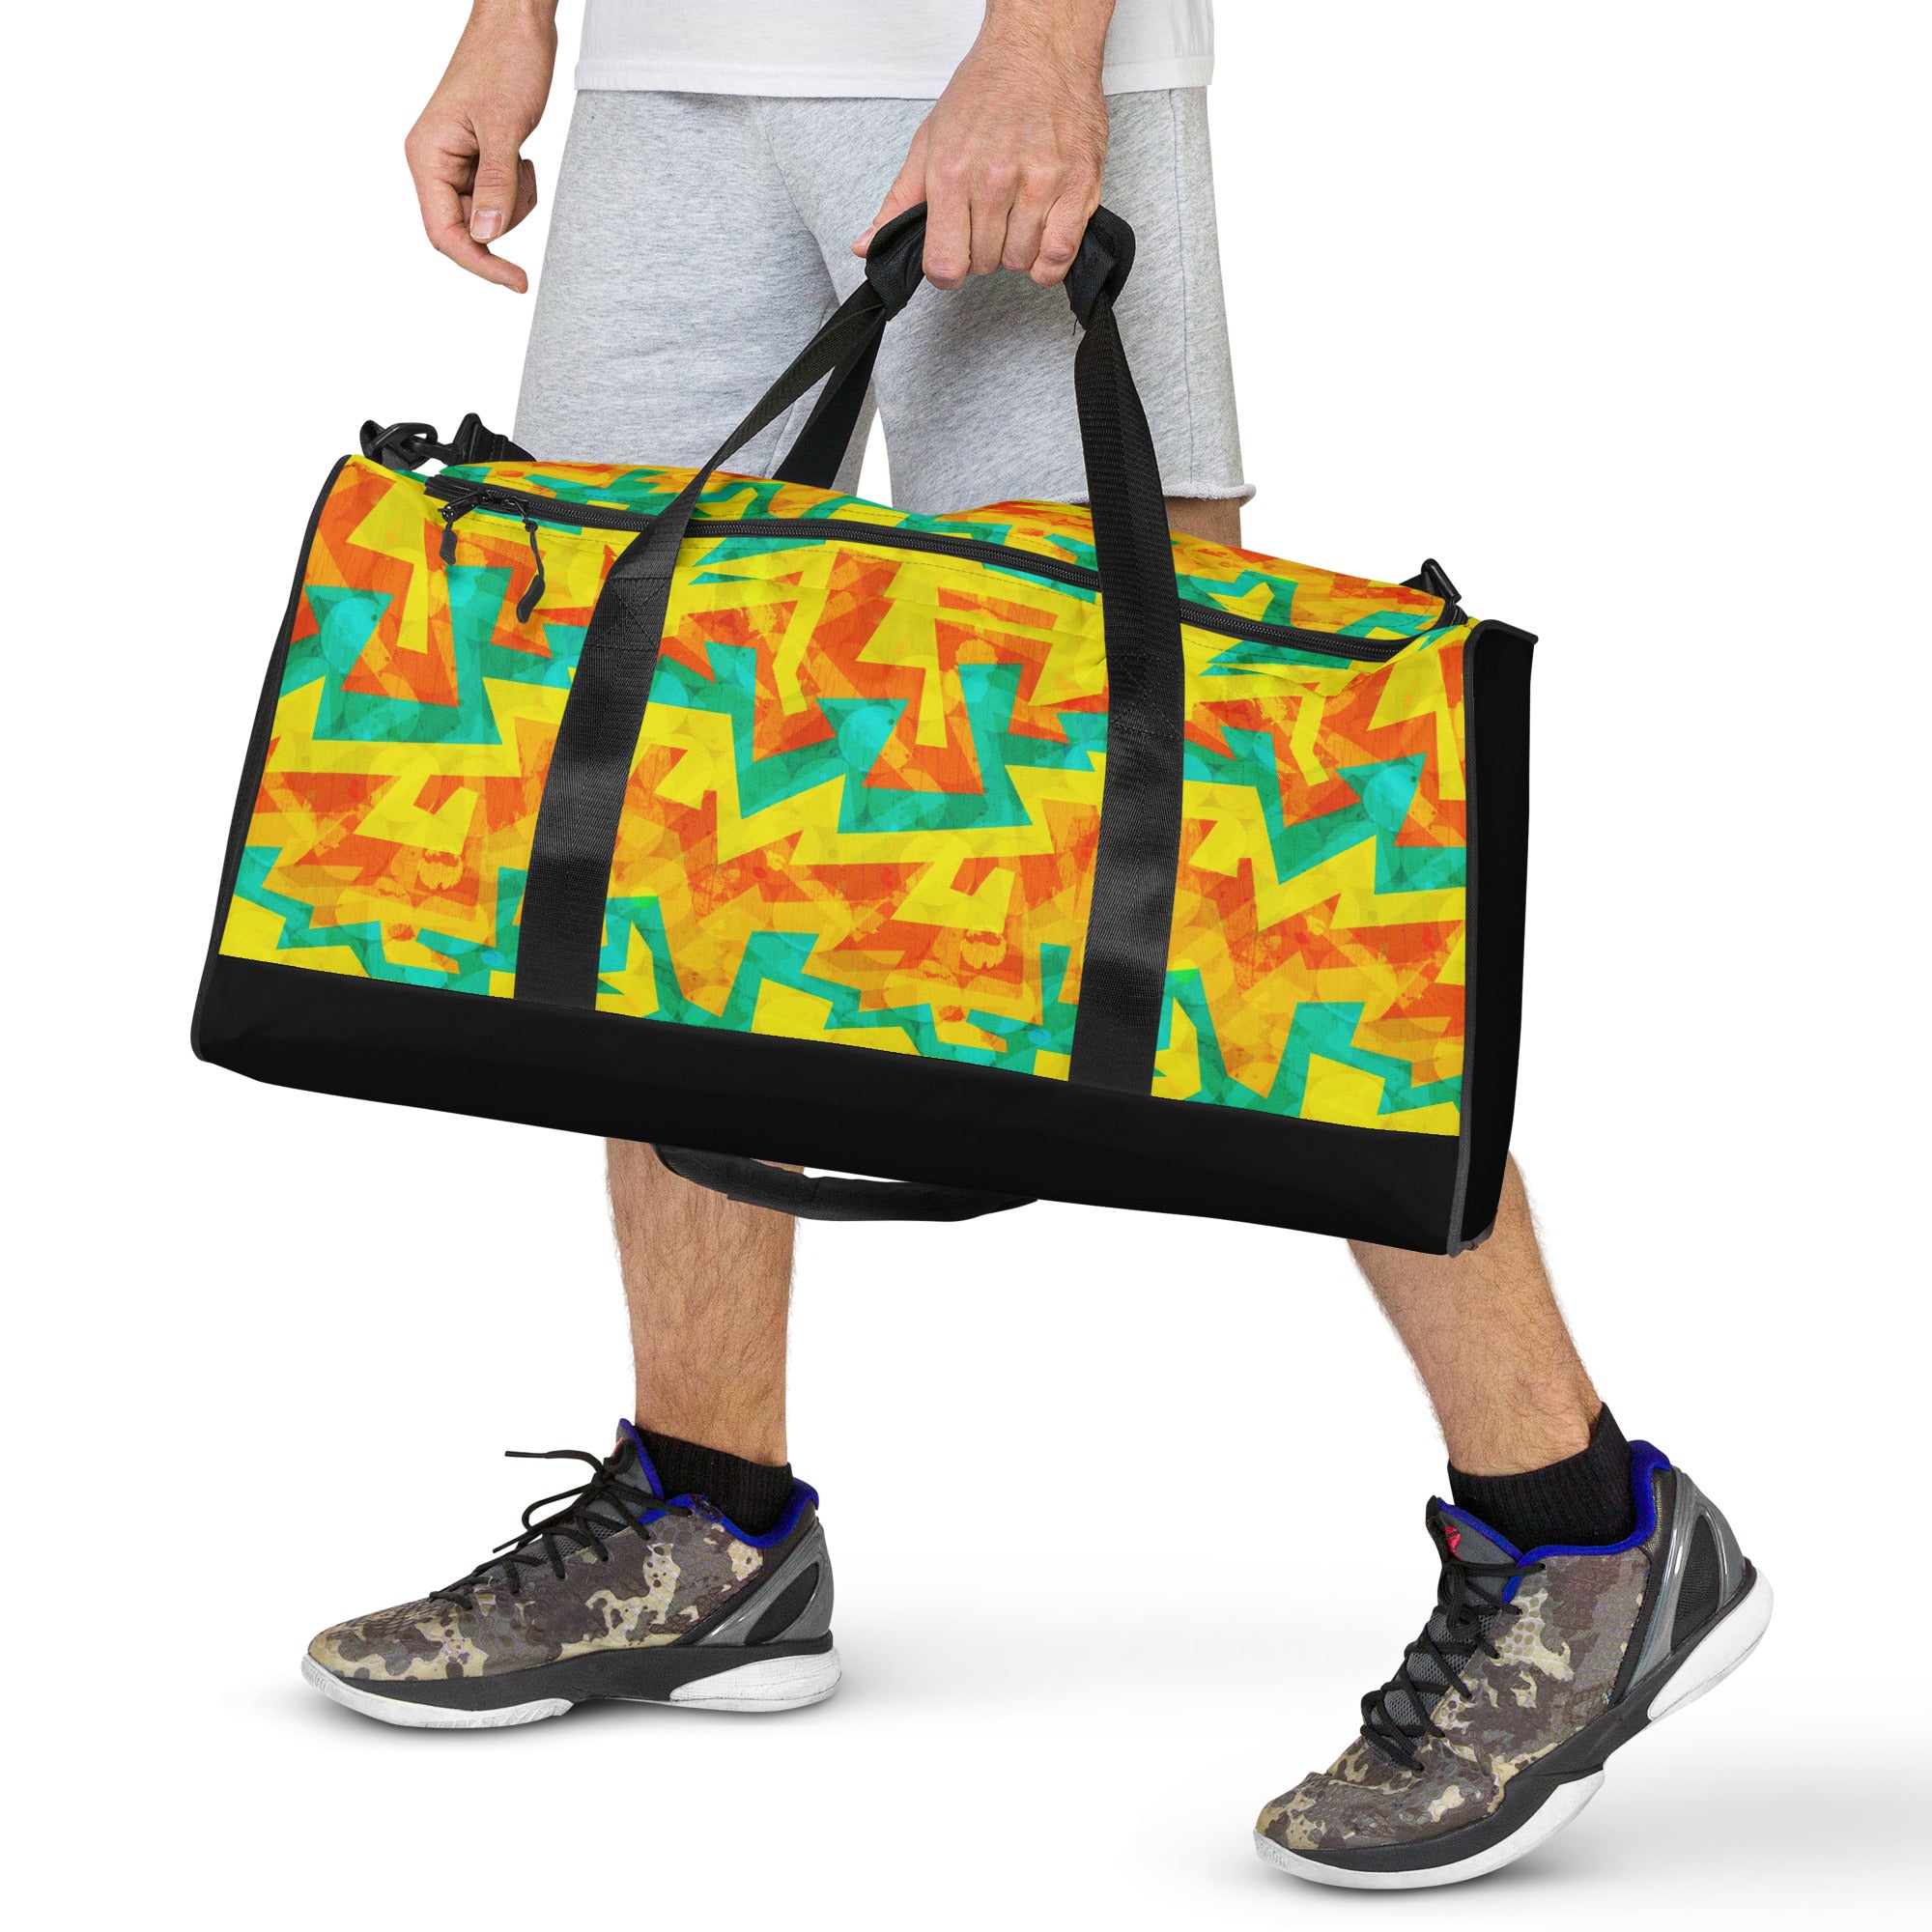 Large Printed Duffle Bag - Geometric Neon in Citrus